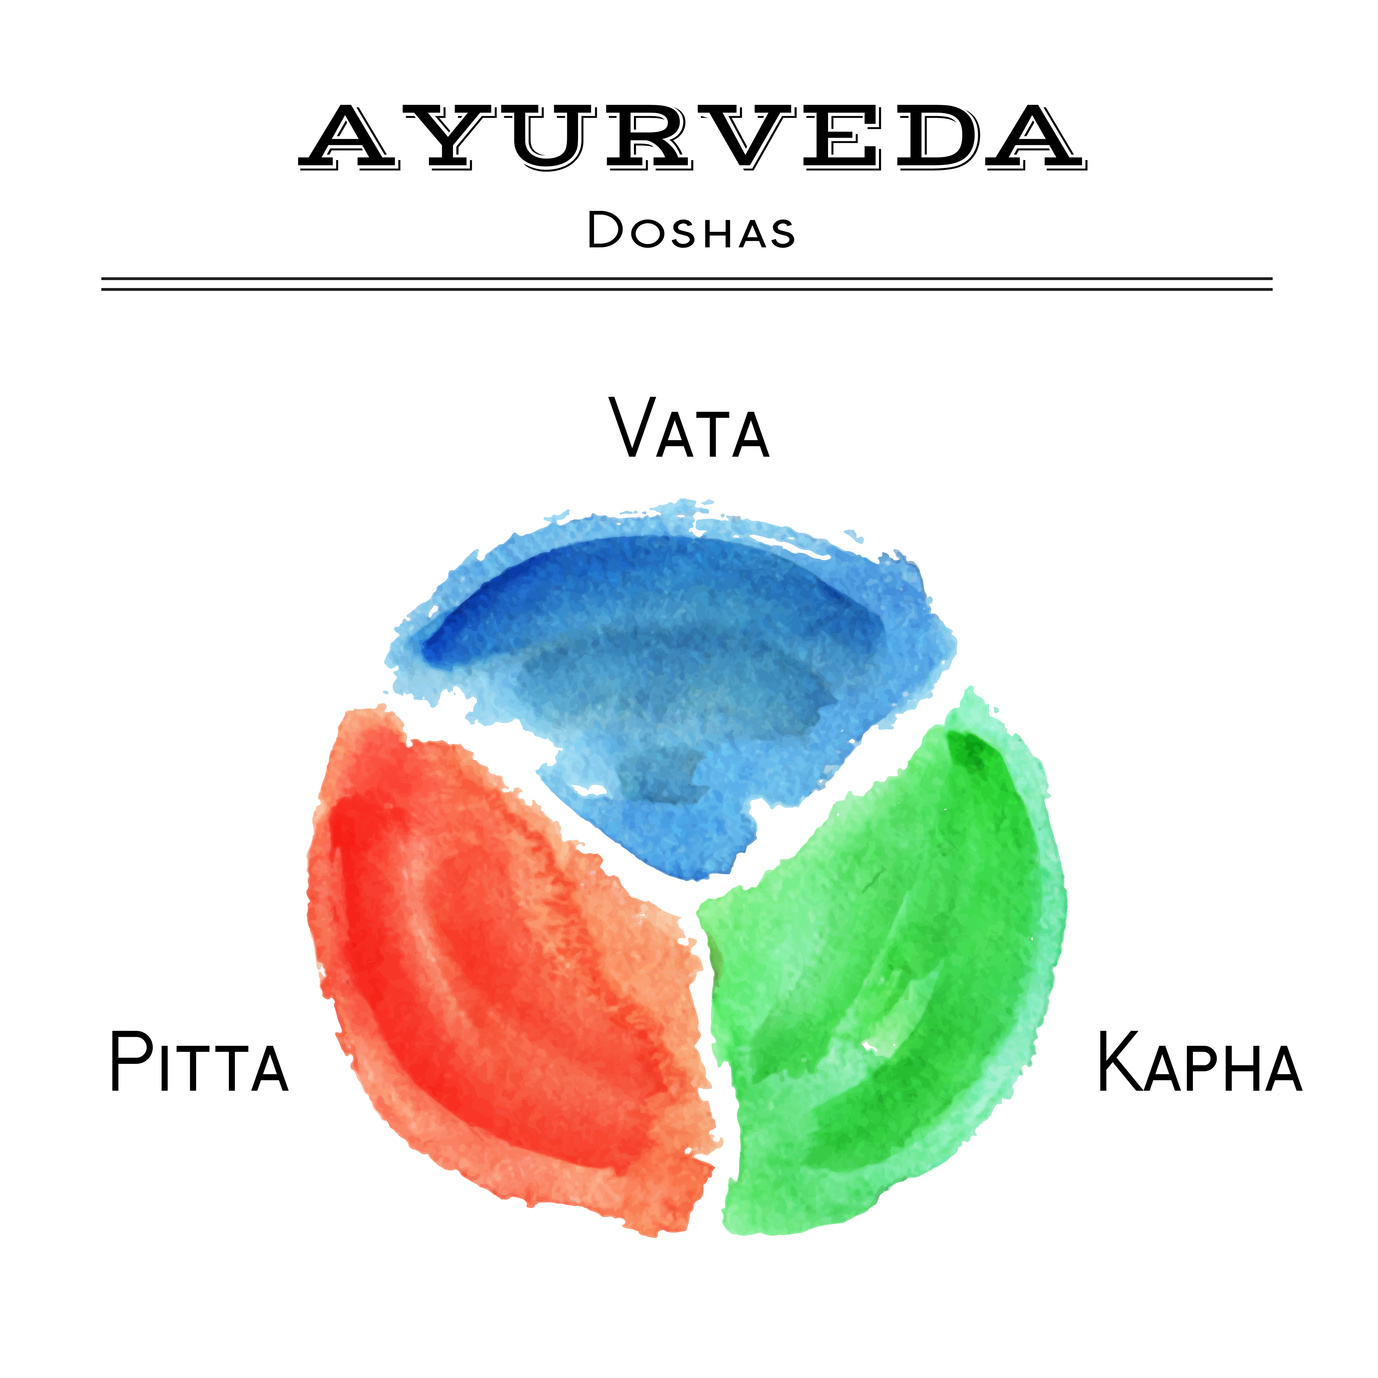 Ayurveda Dosha - Vata - Pitta - Kapha